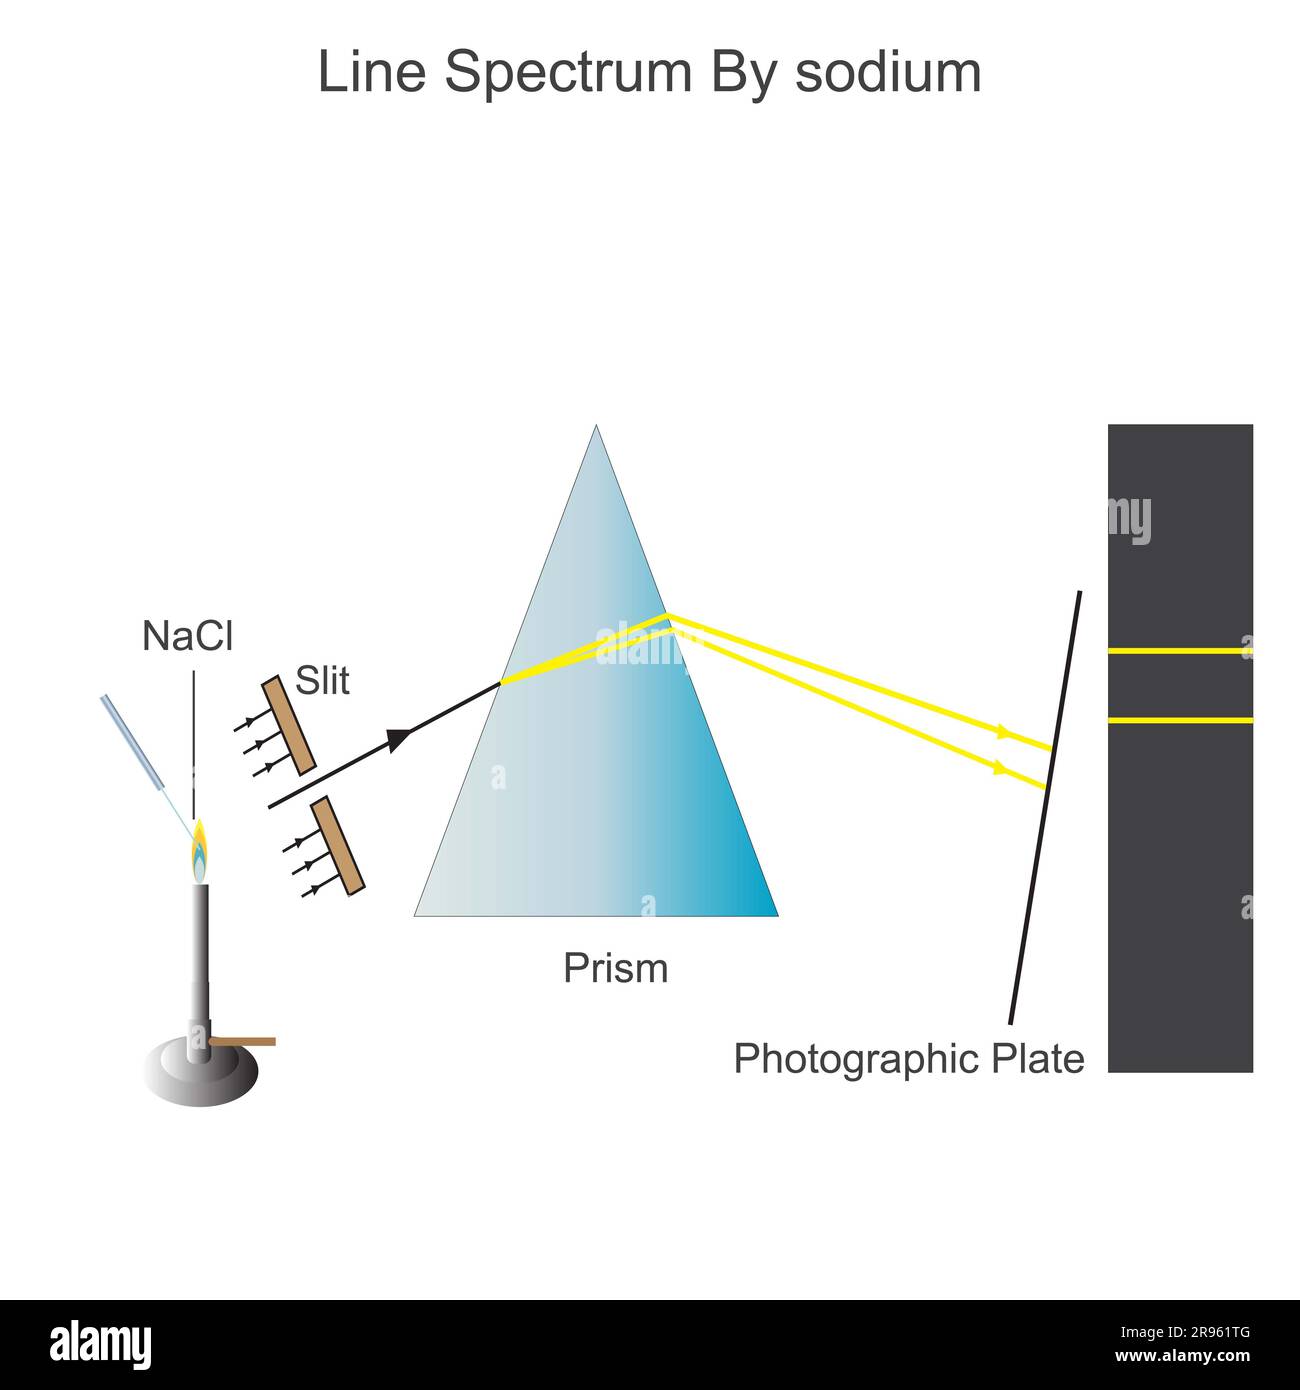 Le spectre linéaire ou discontinu se produit lorsque les atomes excités émettent de la lumière de certaines longueurs d'onde, une série de lignes colorées avec des espaces sombres entre elles Banque D'Images